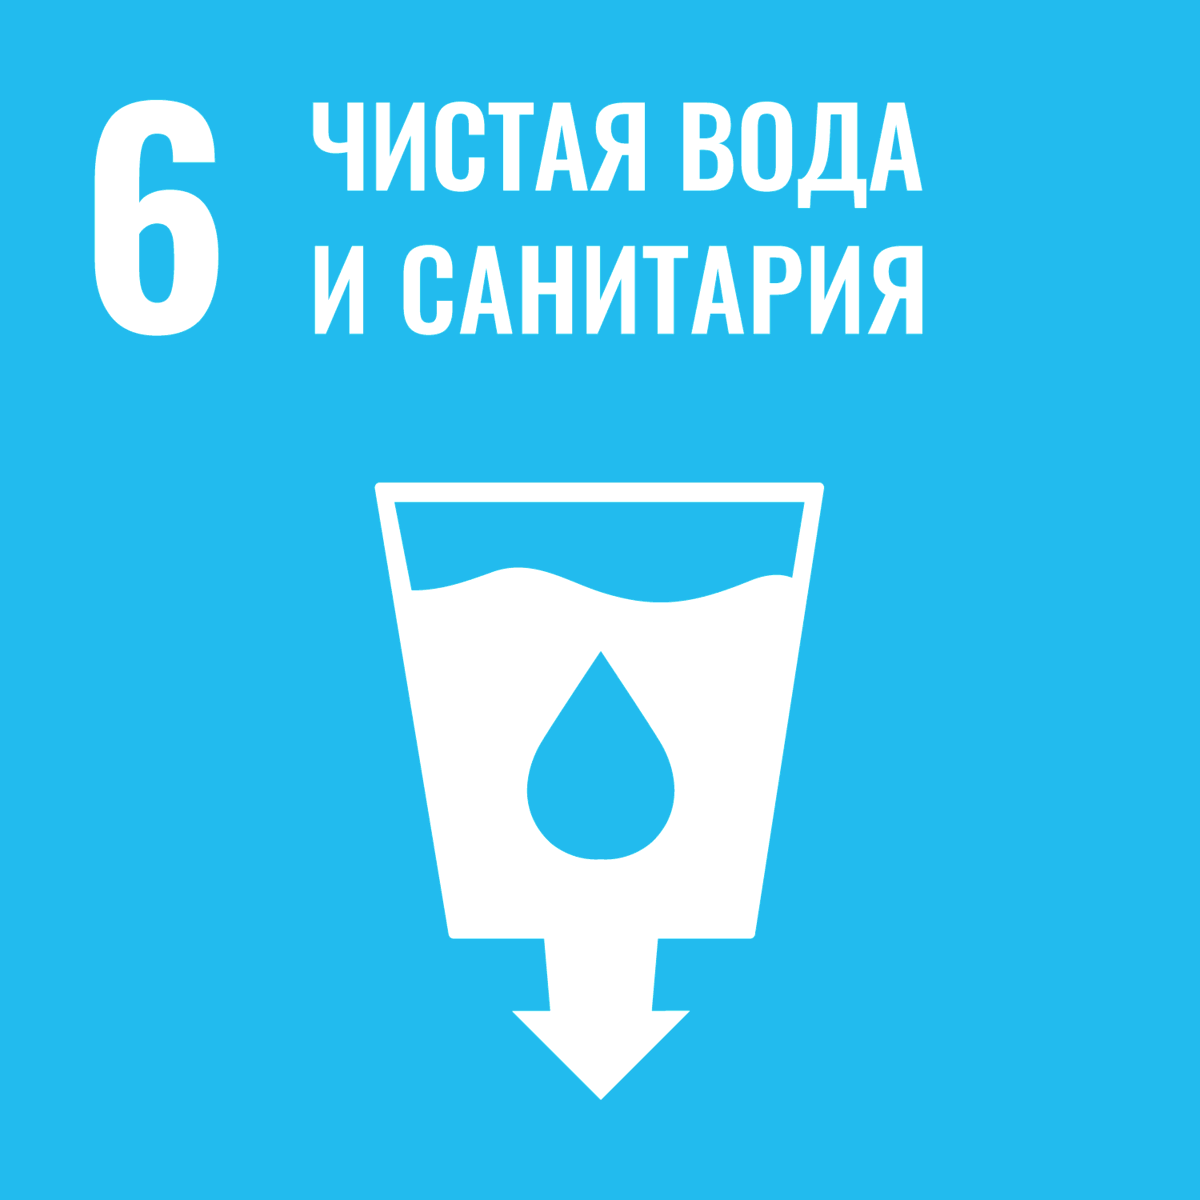 Чистая вода и санитария - цель устойчивого развития № 6 принятая ООН — фото 1